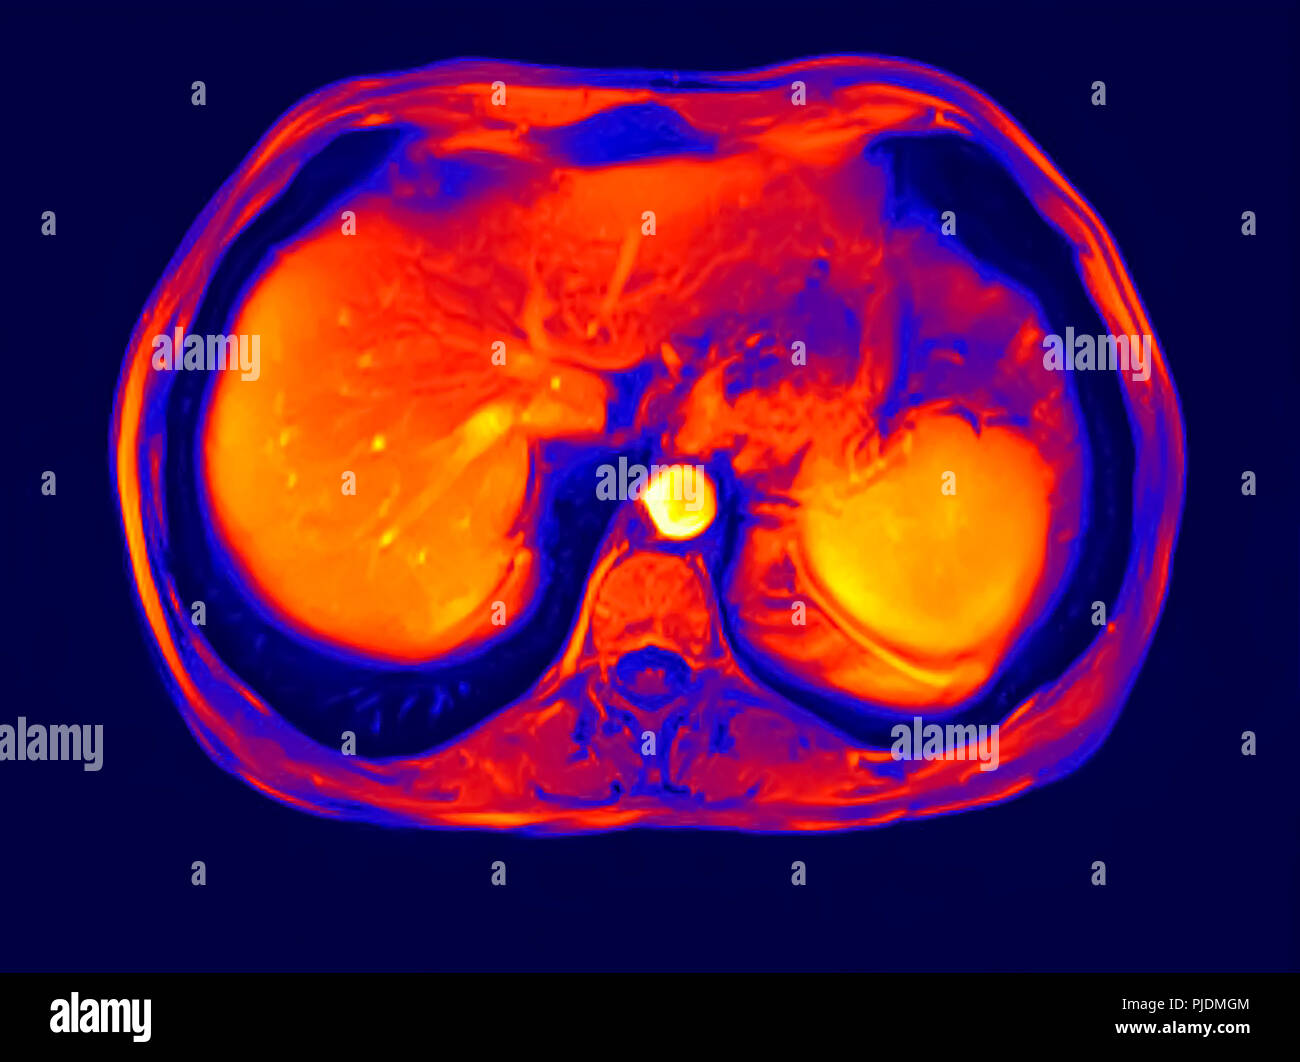 Querschnitt abdomen MRT-Untersuchung von 60 Jahre alten männlichen Patienten mit Nierensteinen Stockfoto